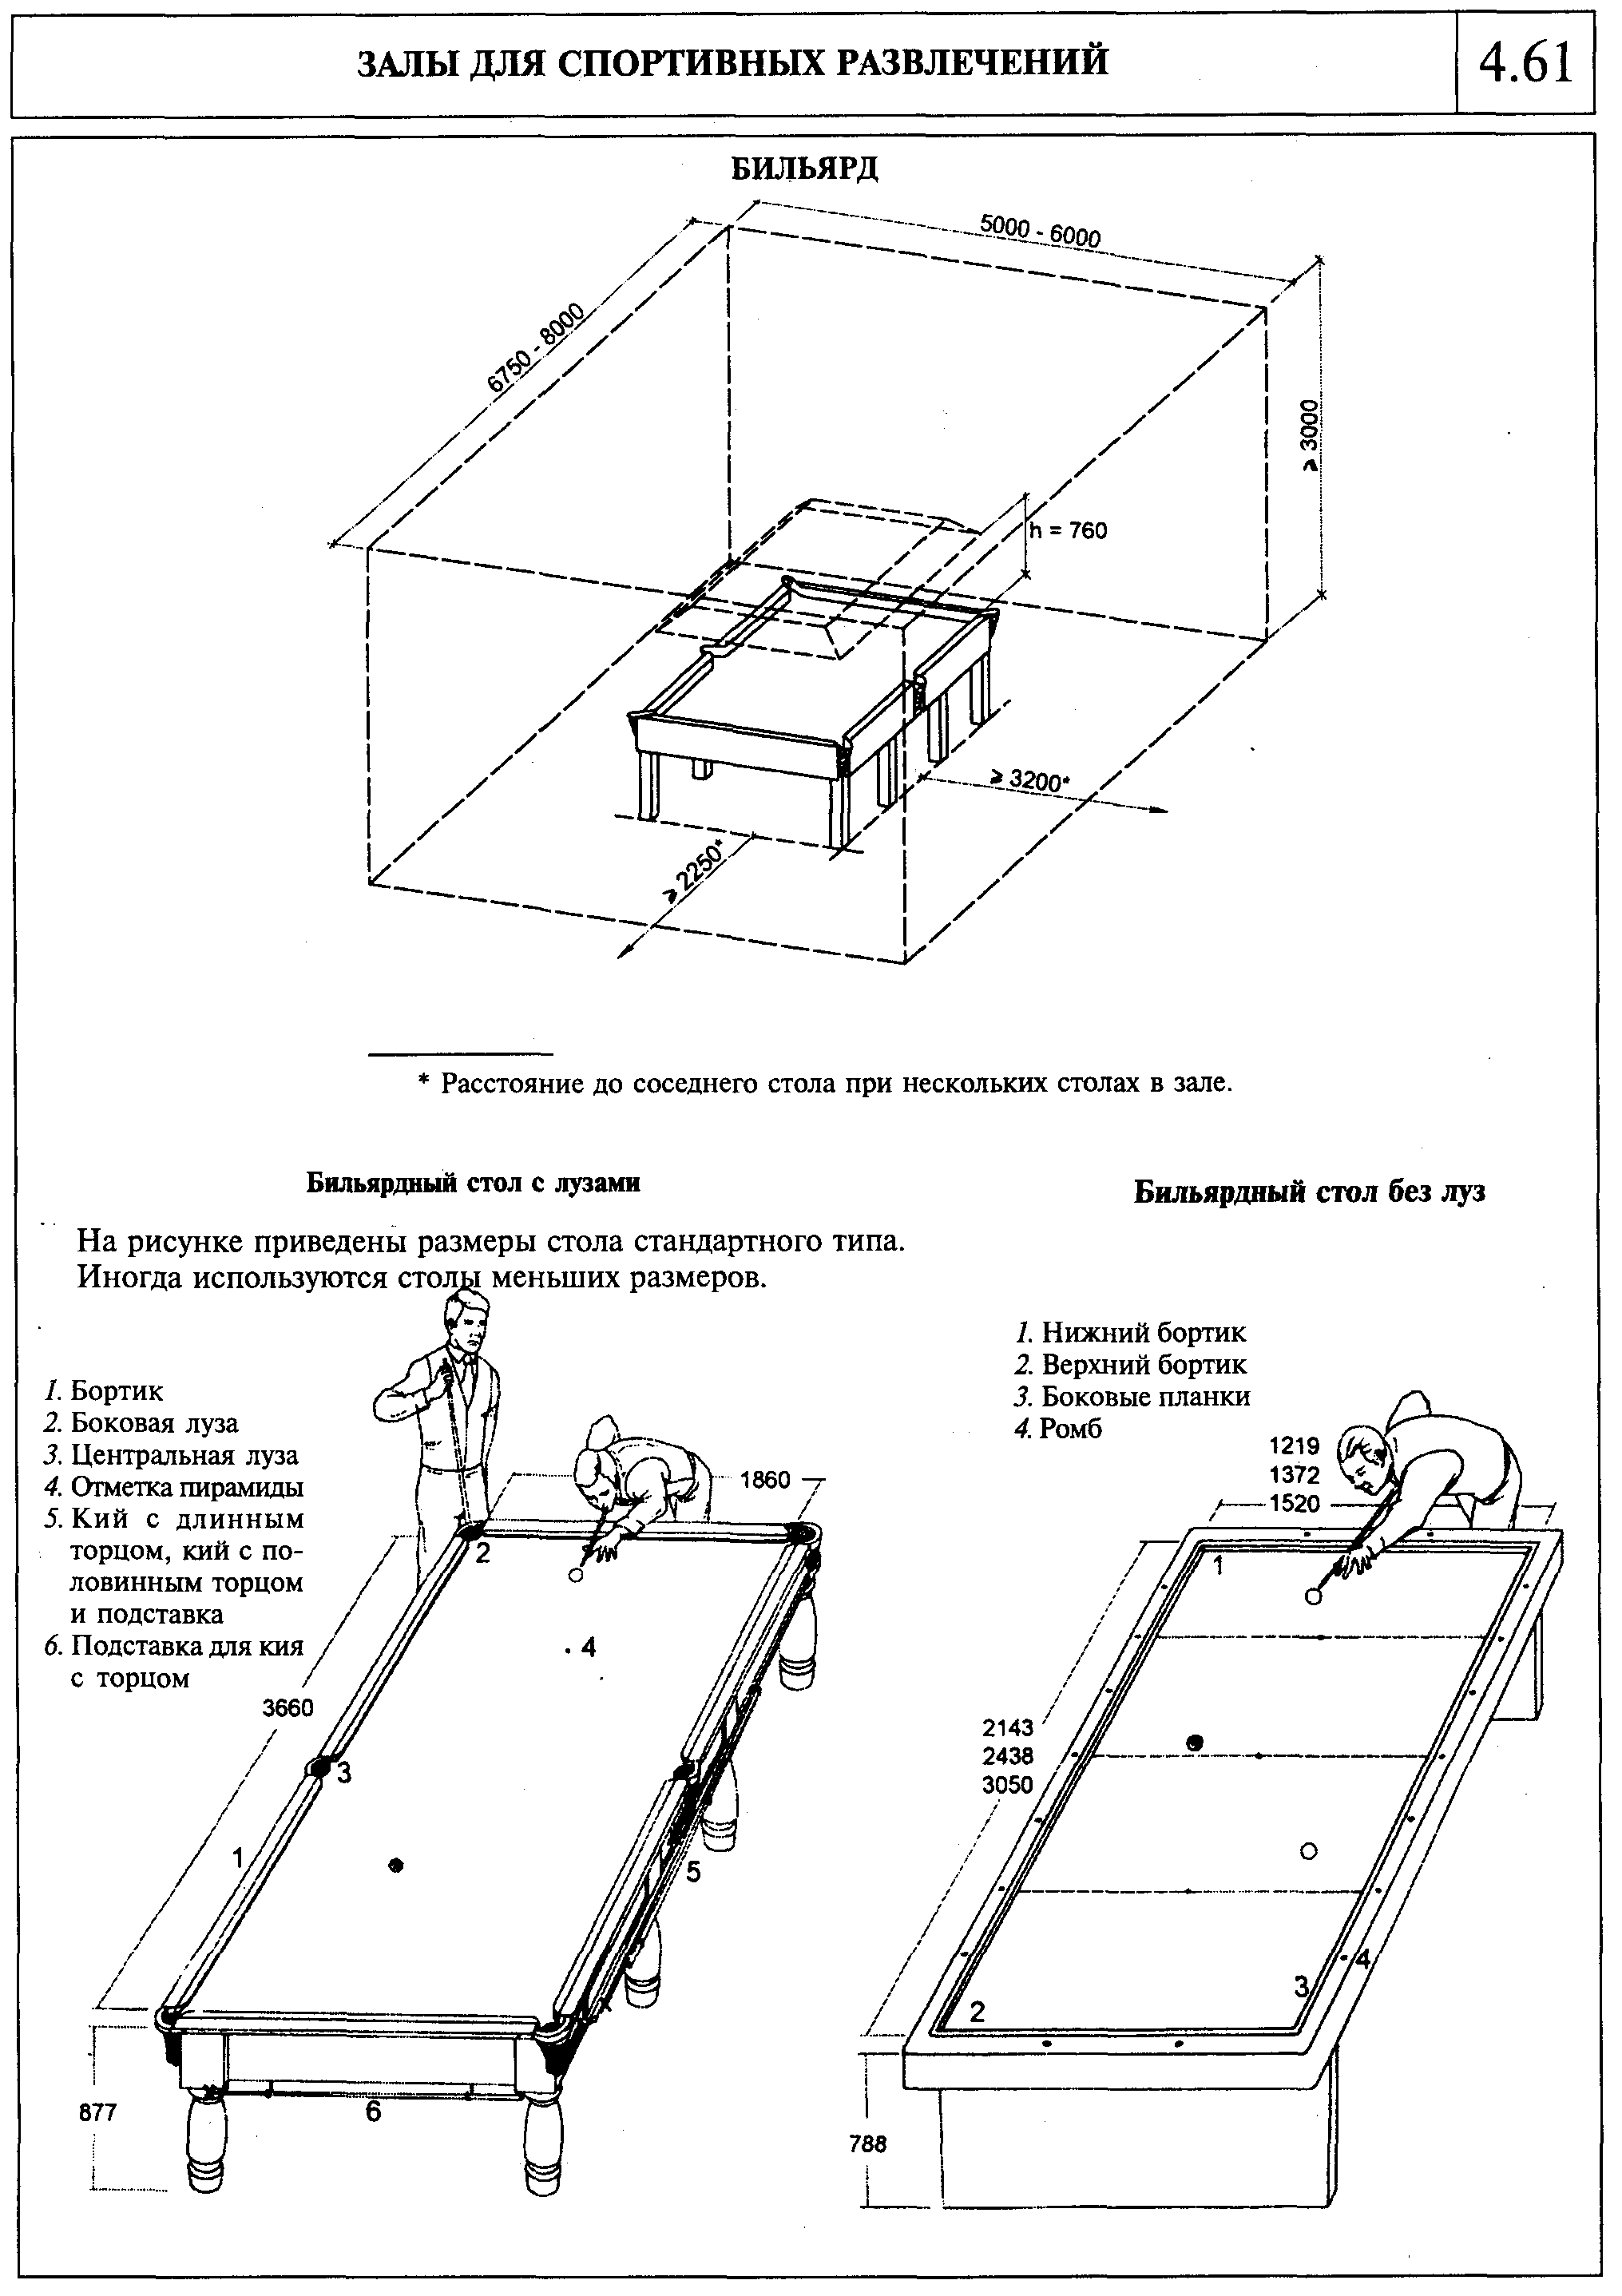 Размеры помещения для бильярдного стола